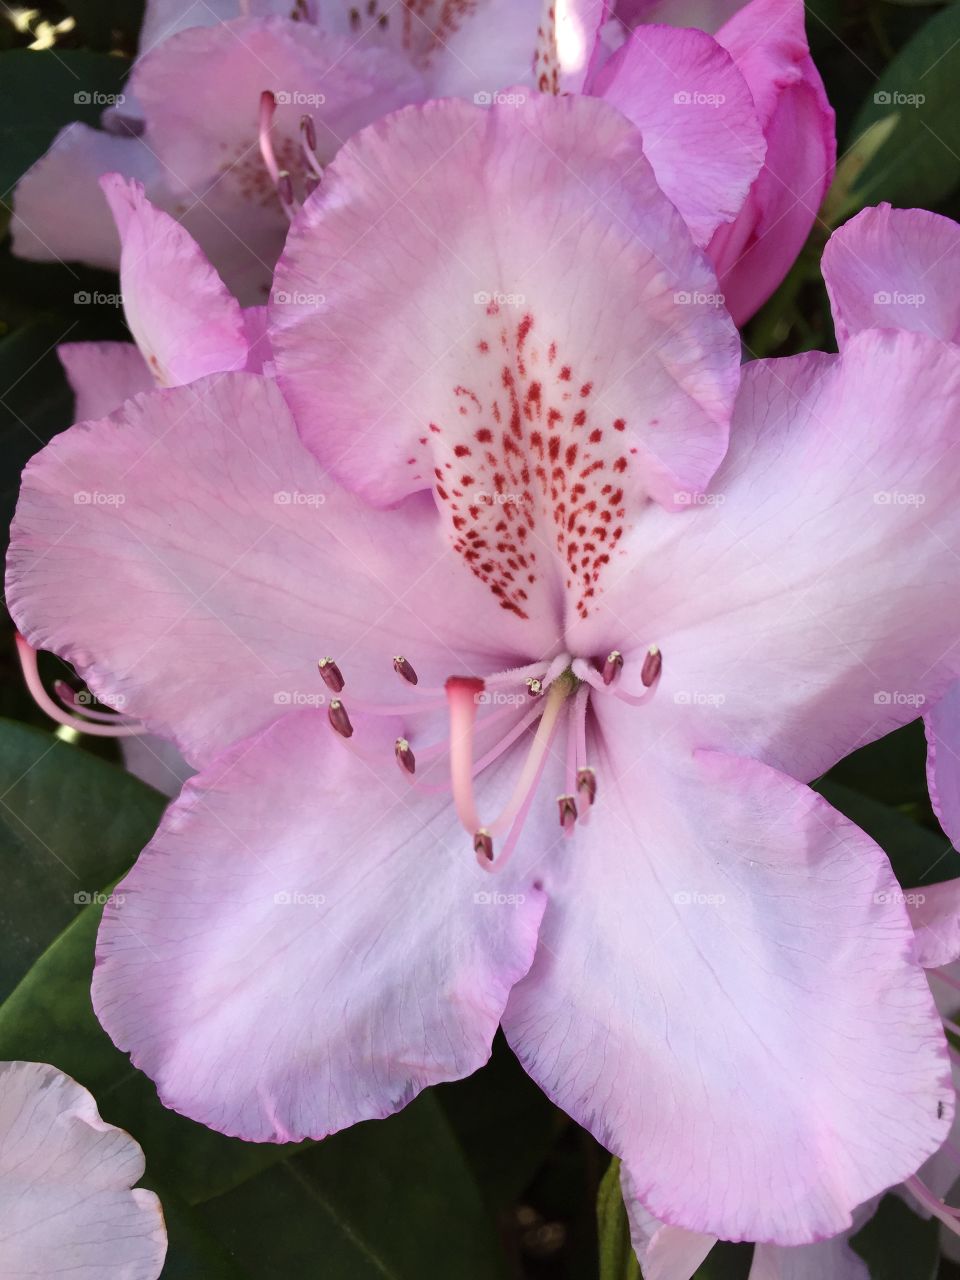 Pink Azalea Glory. Pink azalea flowers in full bloom